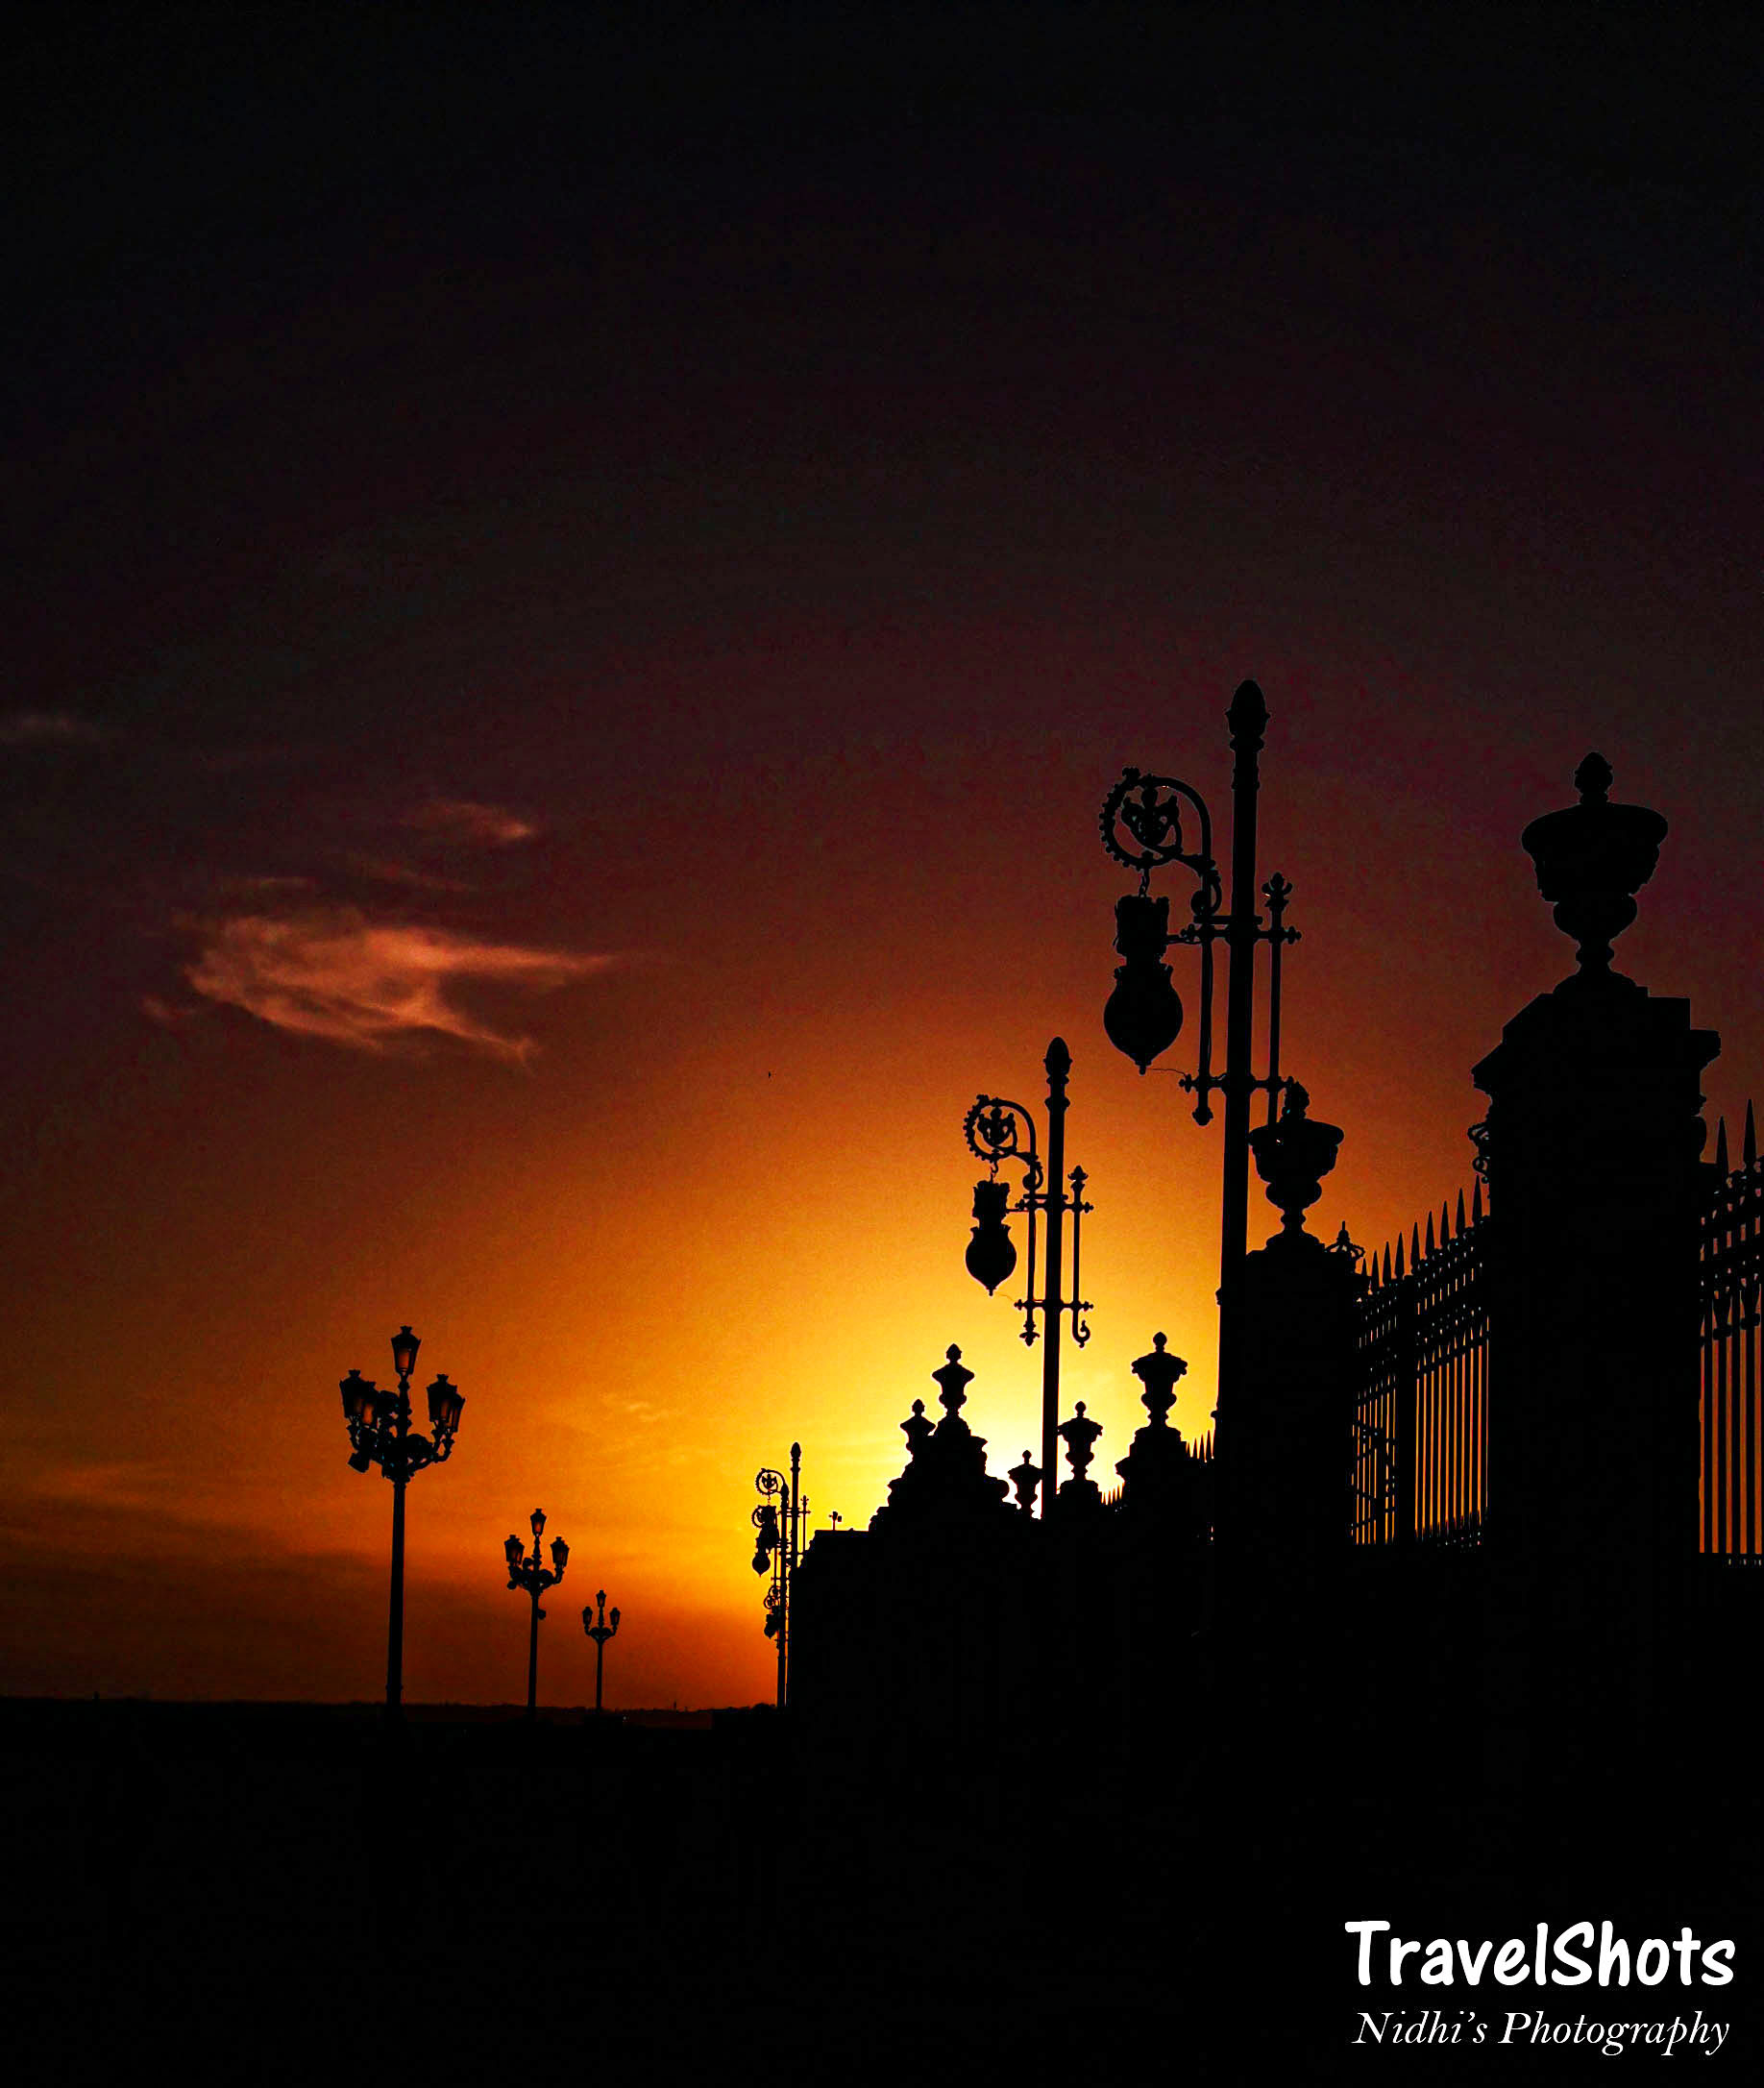 Sunset at Patrimonio Nacional, Royal Palace of Madrid, Spain